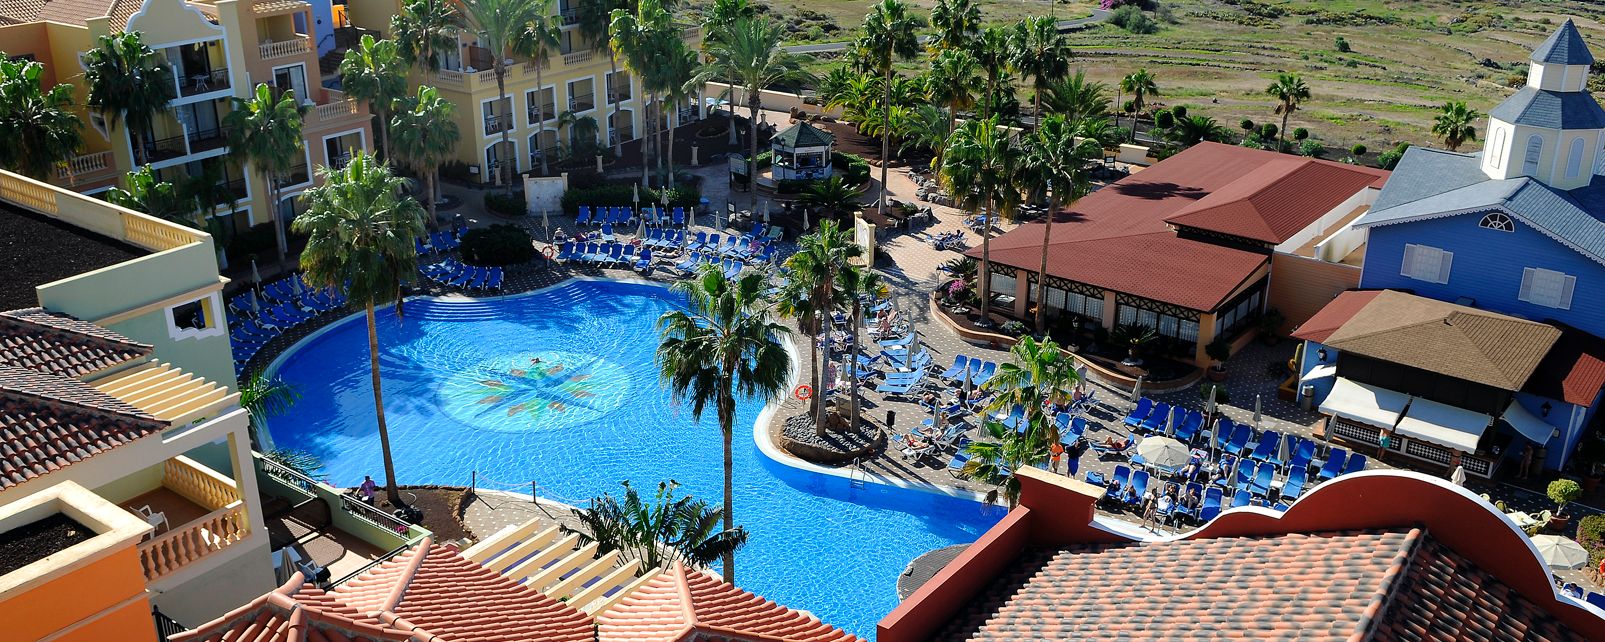 Hotel Sunlight Bahia Principe Tenerife Resort